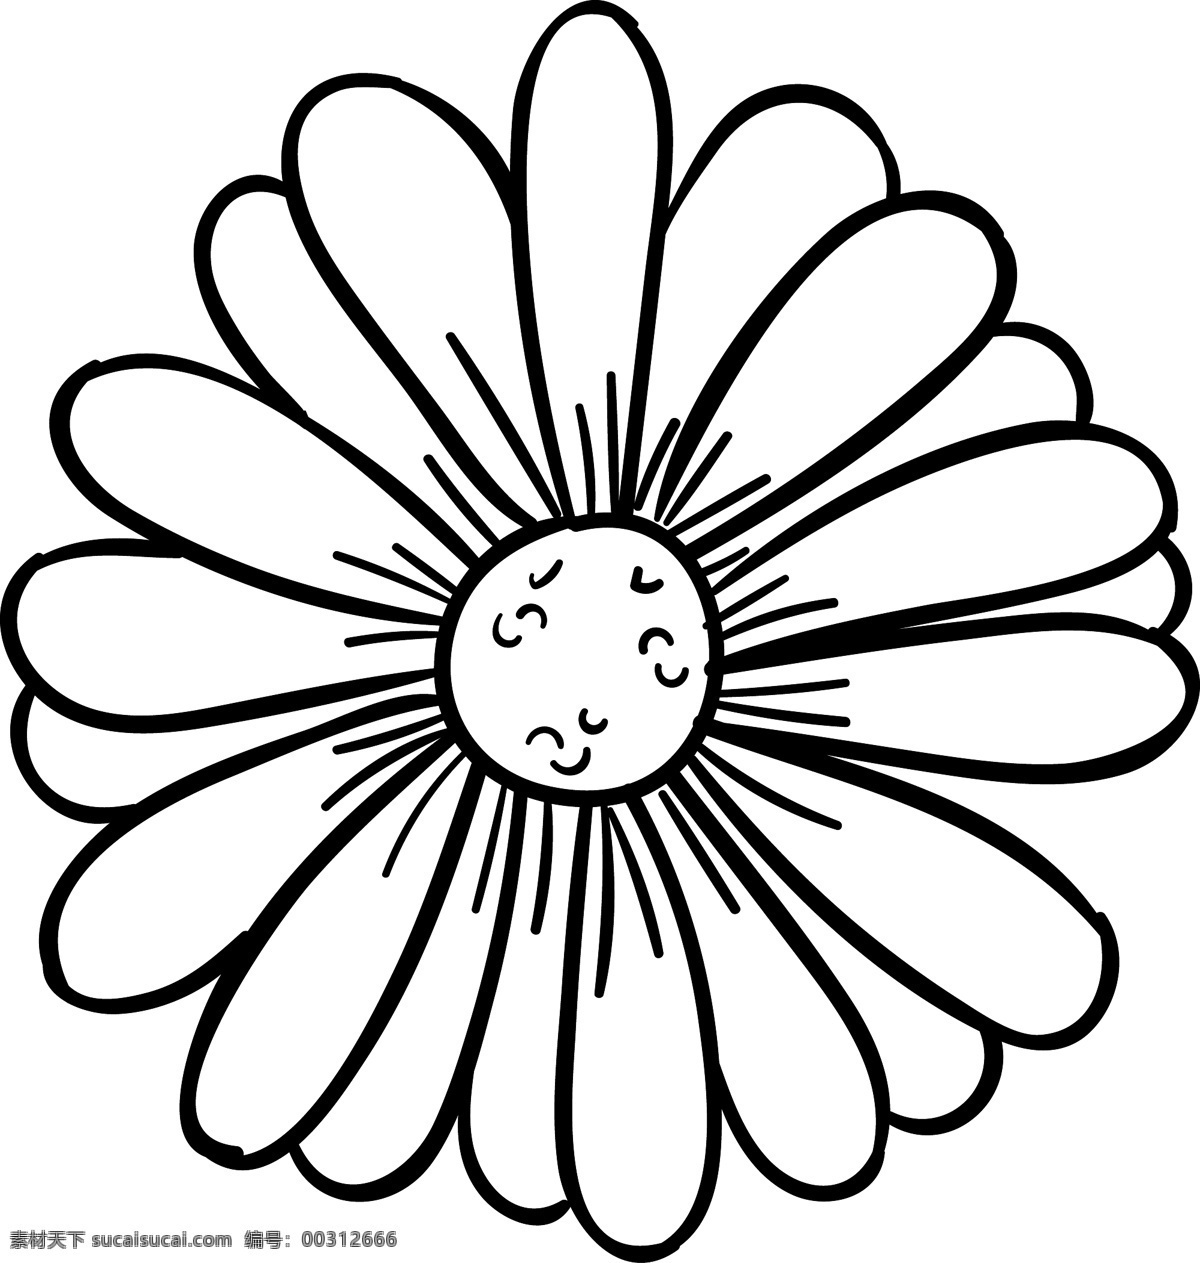 美丽 的卡 通 手绘 花 漂亮 卡通 素描 花卉 线条 艺术 黑色 白色